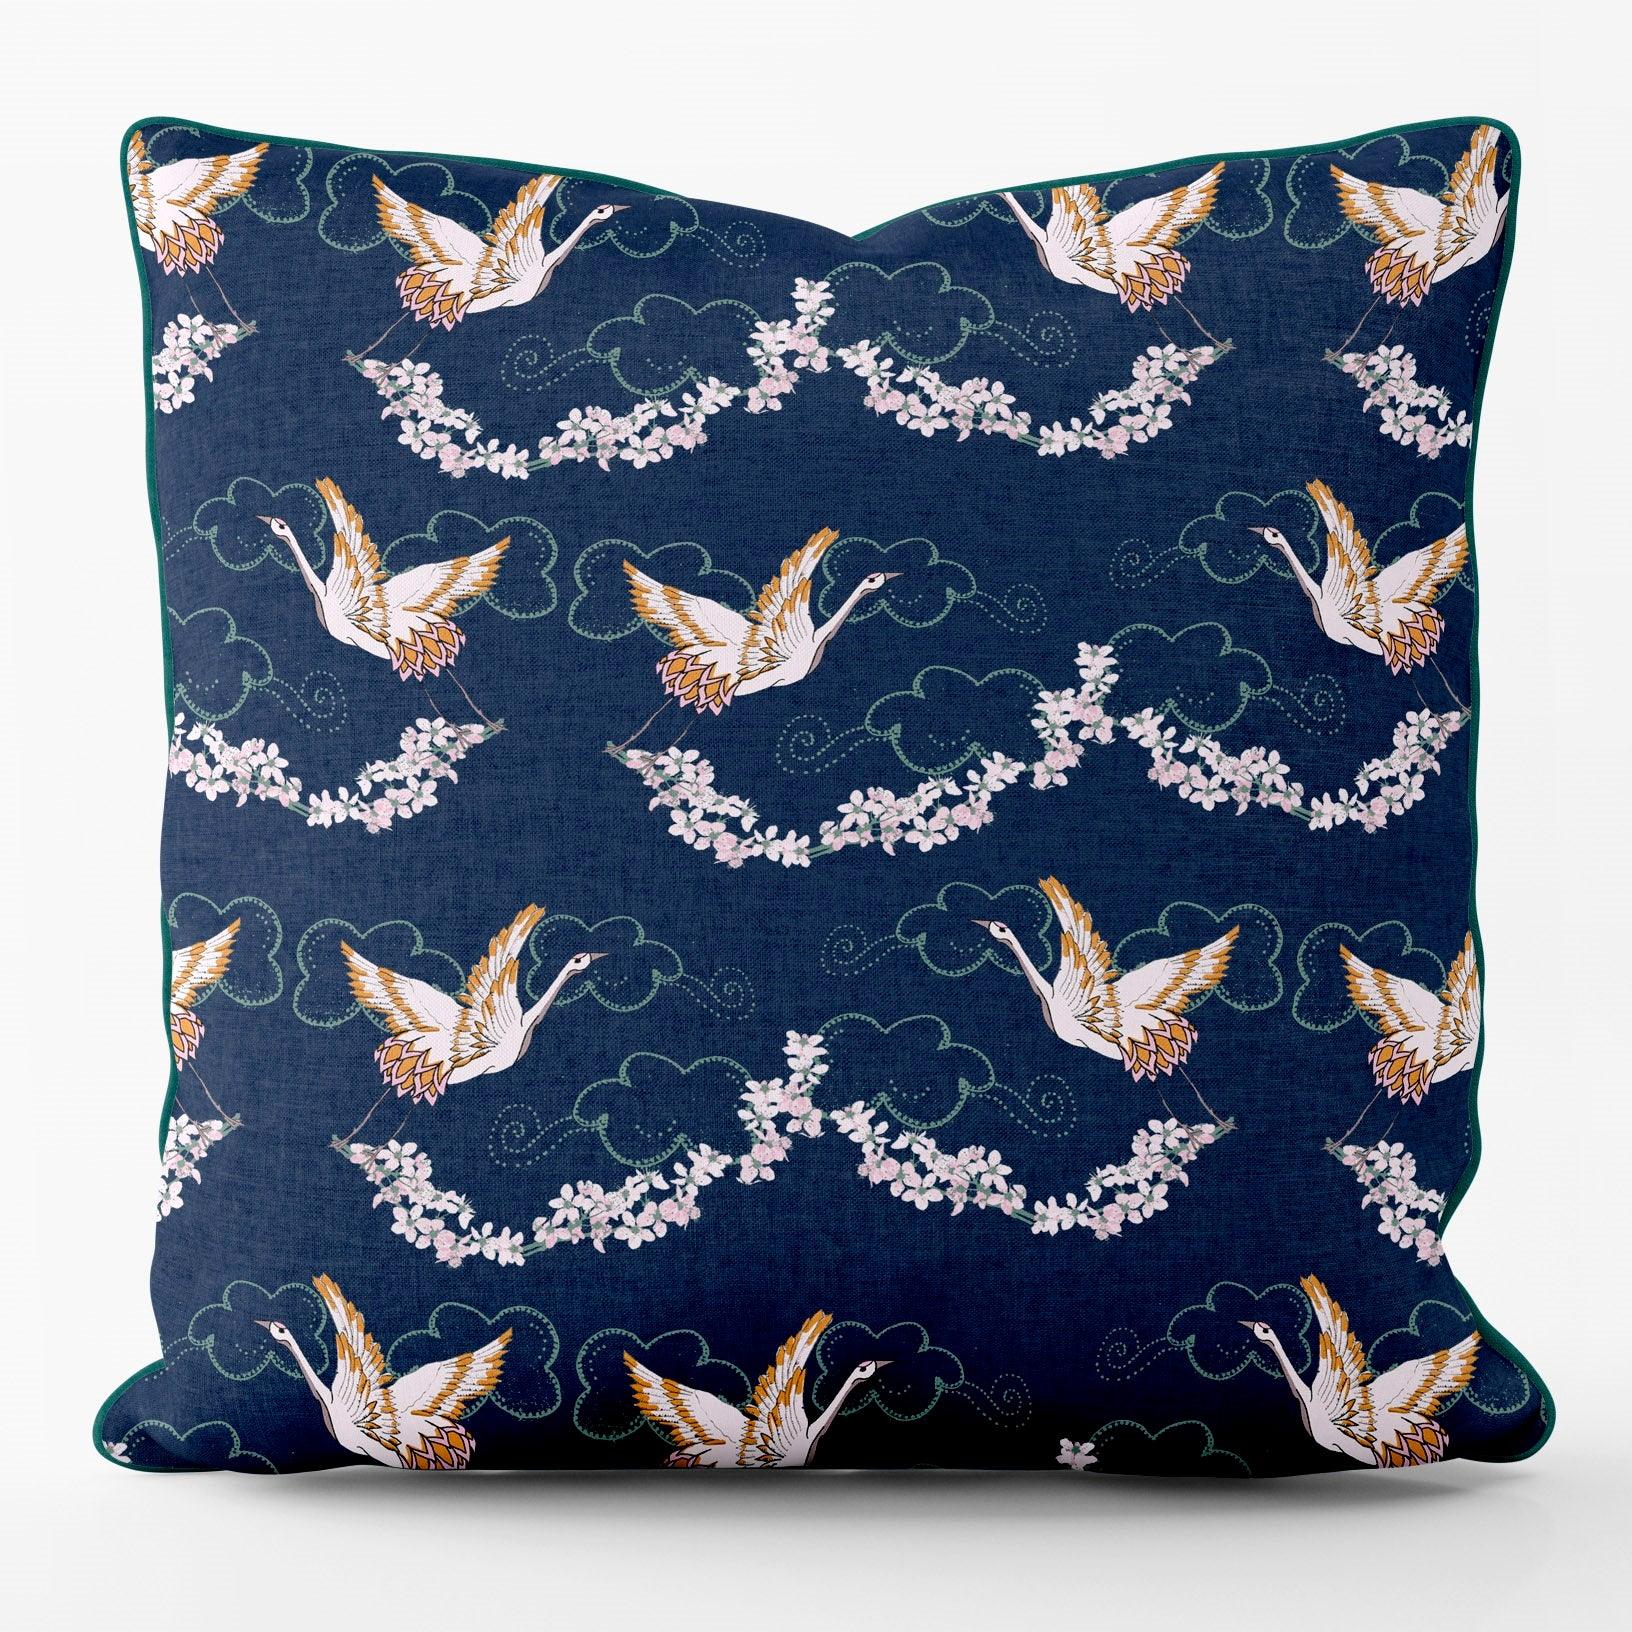 Crane Blossom Blue - Their Nibs Outdoor Cushion